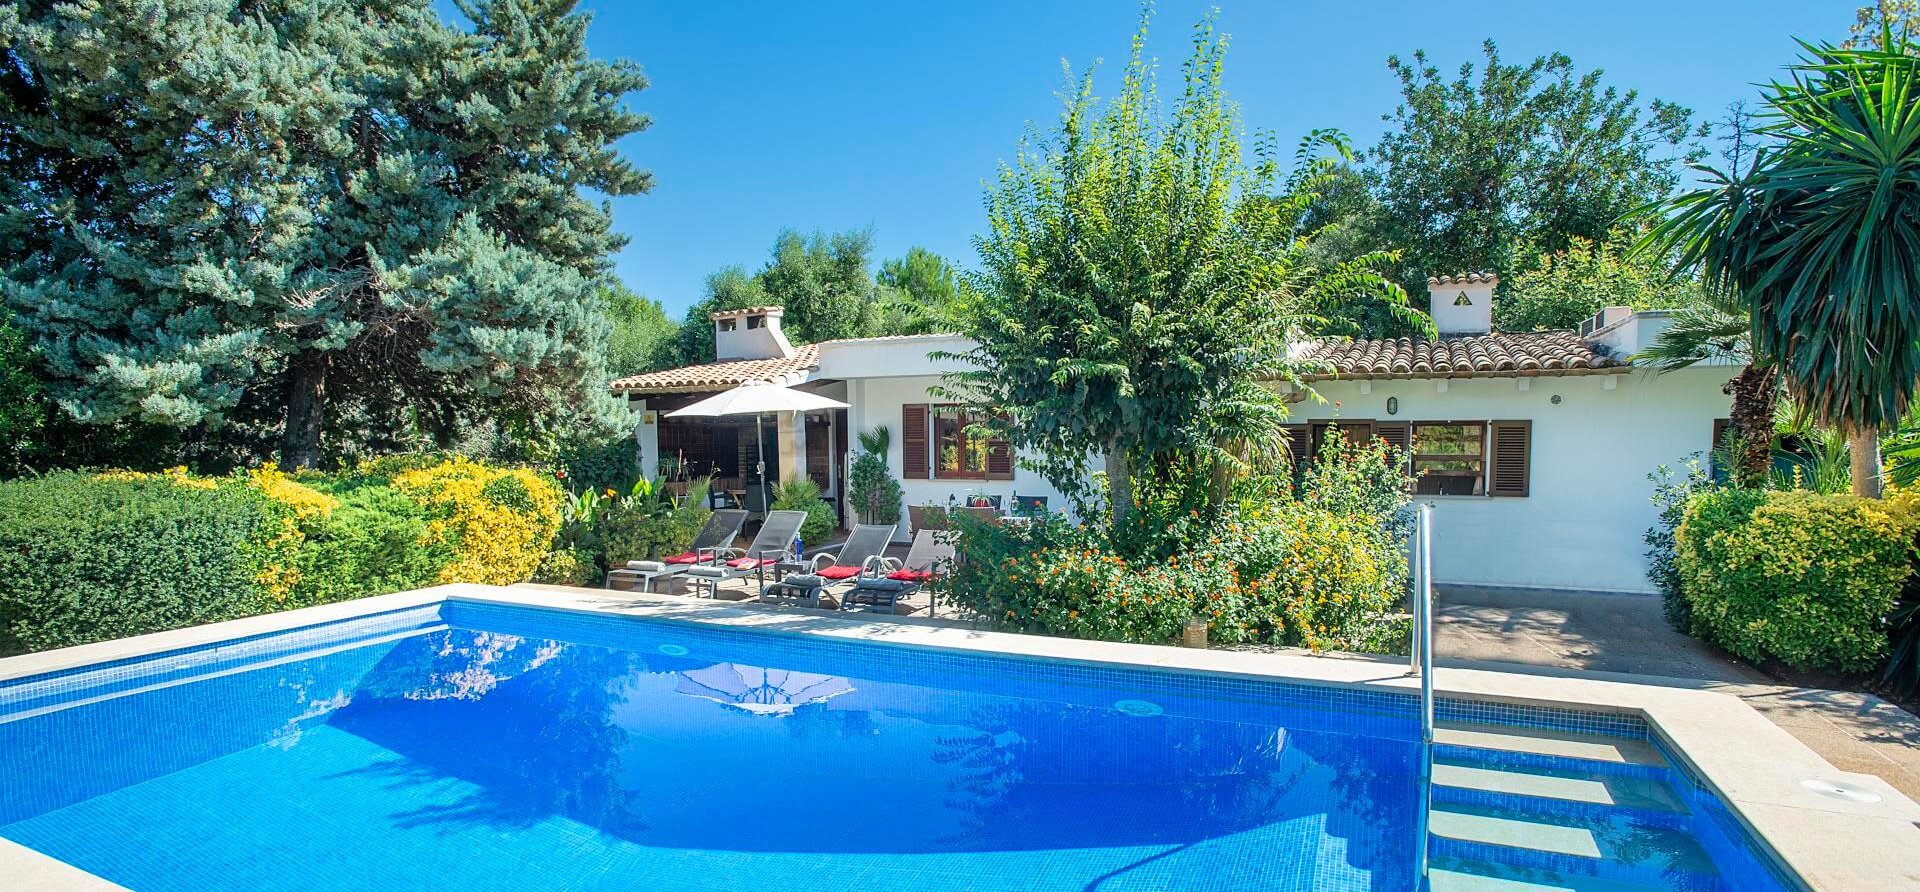 Ferienhaus Mallorca mit Pool für 4 Personen mieten.